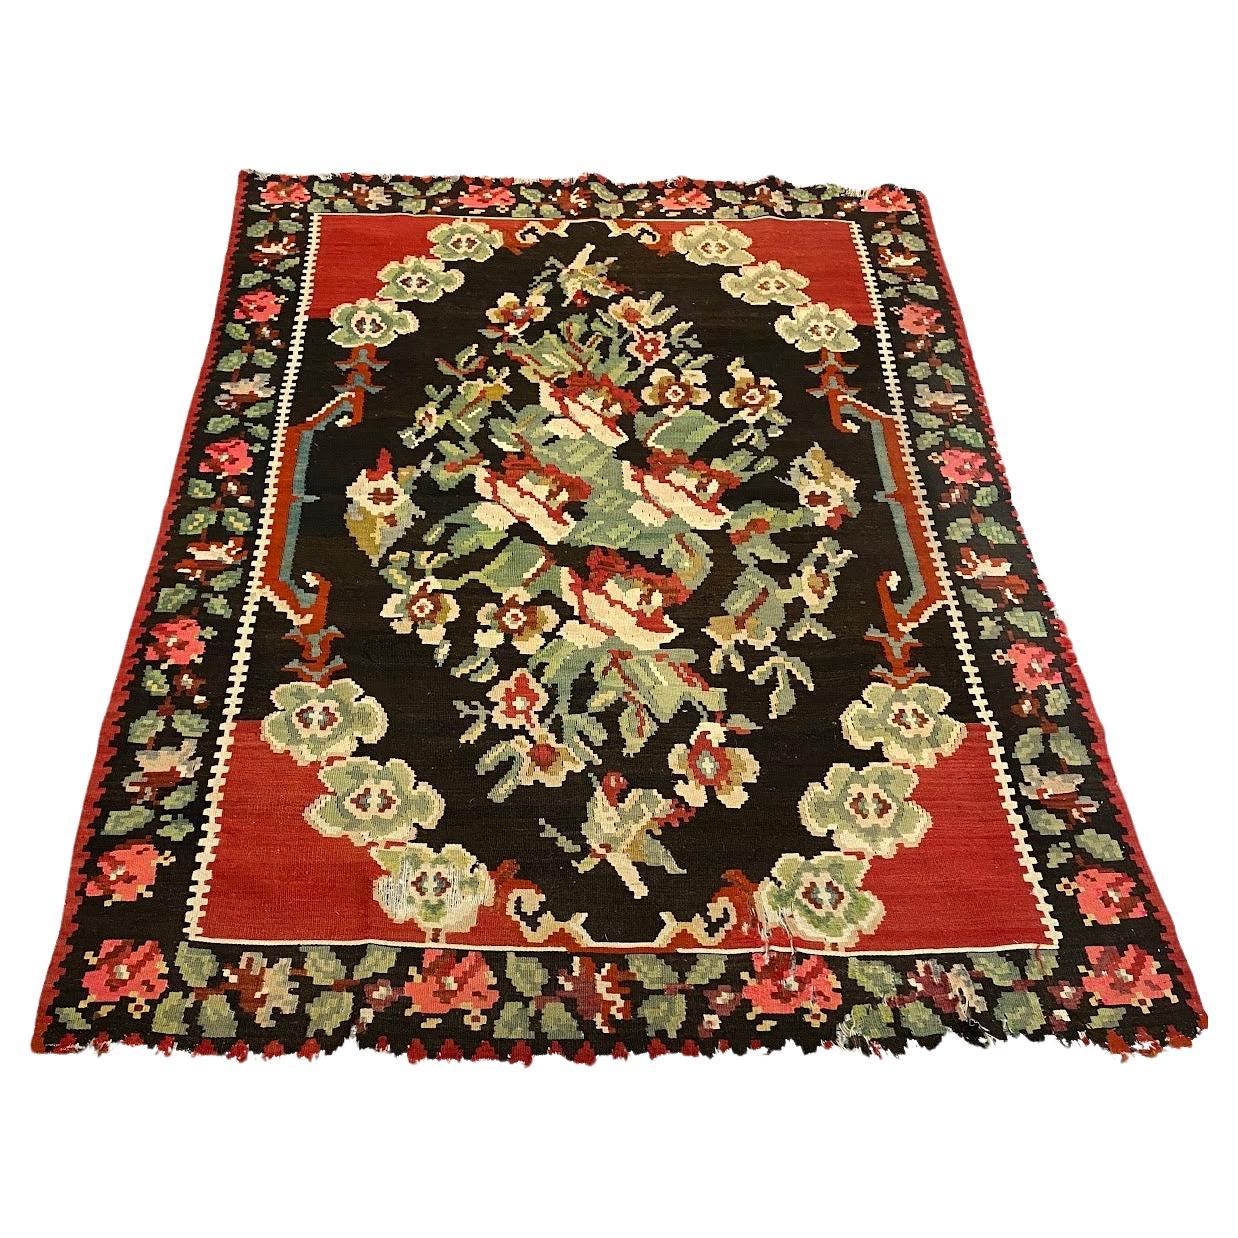  Vintage Floral Flatweave Teppich in Rot, Schwarz, Brown, Grün und Gelb